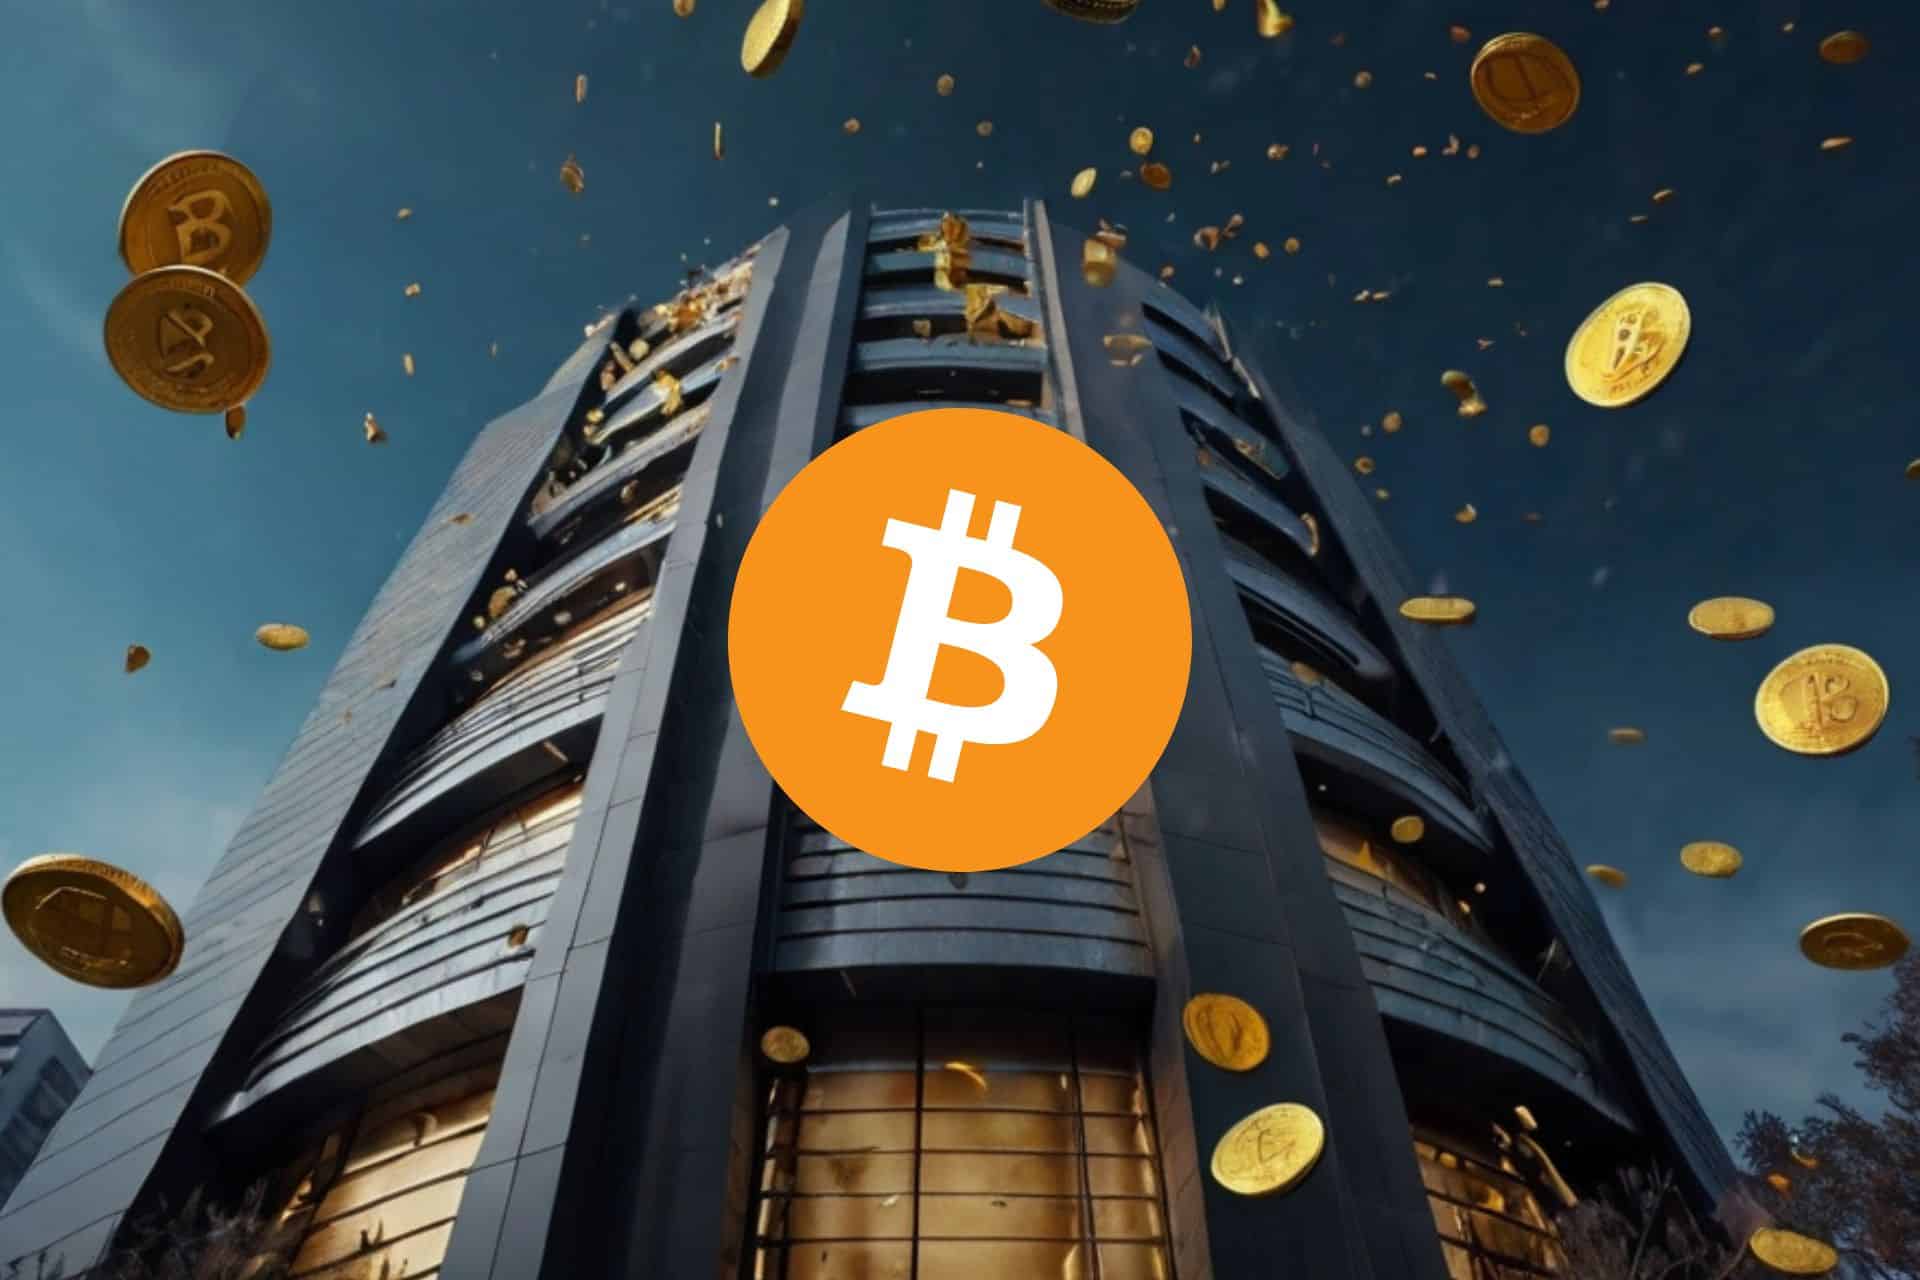 Deszcz Bitcoinów, w tle bank z logo BTC.